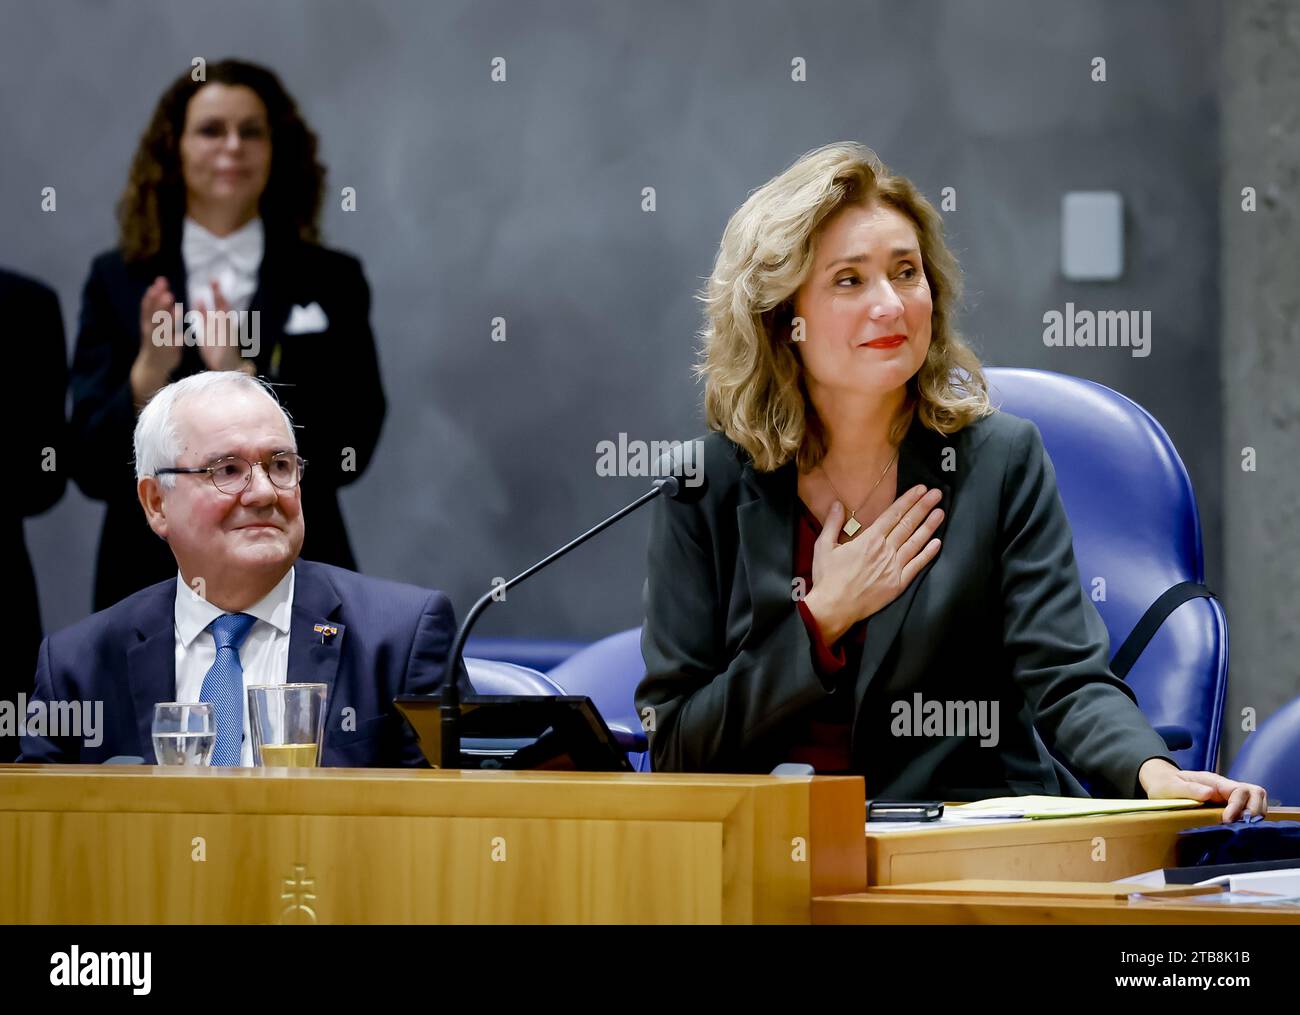 LA HAYE - la Présidente Vera Bergkamp lors de la dernière réunion plénière de l'actuelle Chambre des représentants. Au cours de la réunion, les députés sortants se verront dire au revoir après les élections à la Chambre des représentants. ANP ROBIN VAN LONKHUIJSEN pays-bas Out - belgique Out Banque D'Images